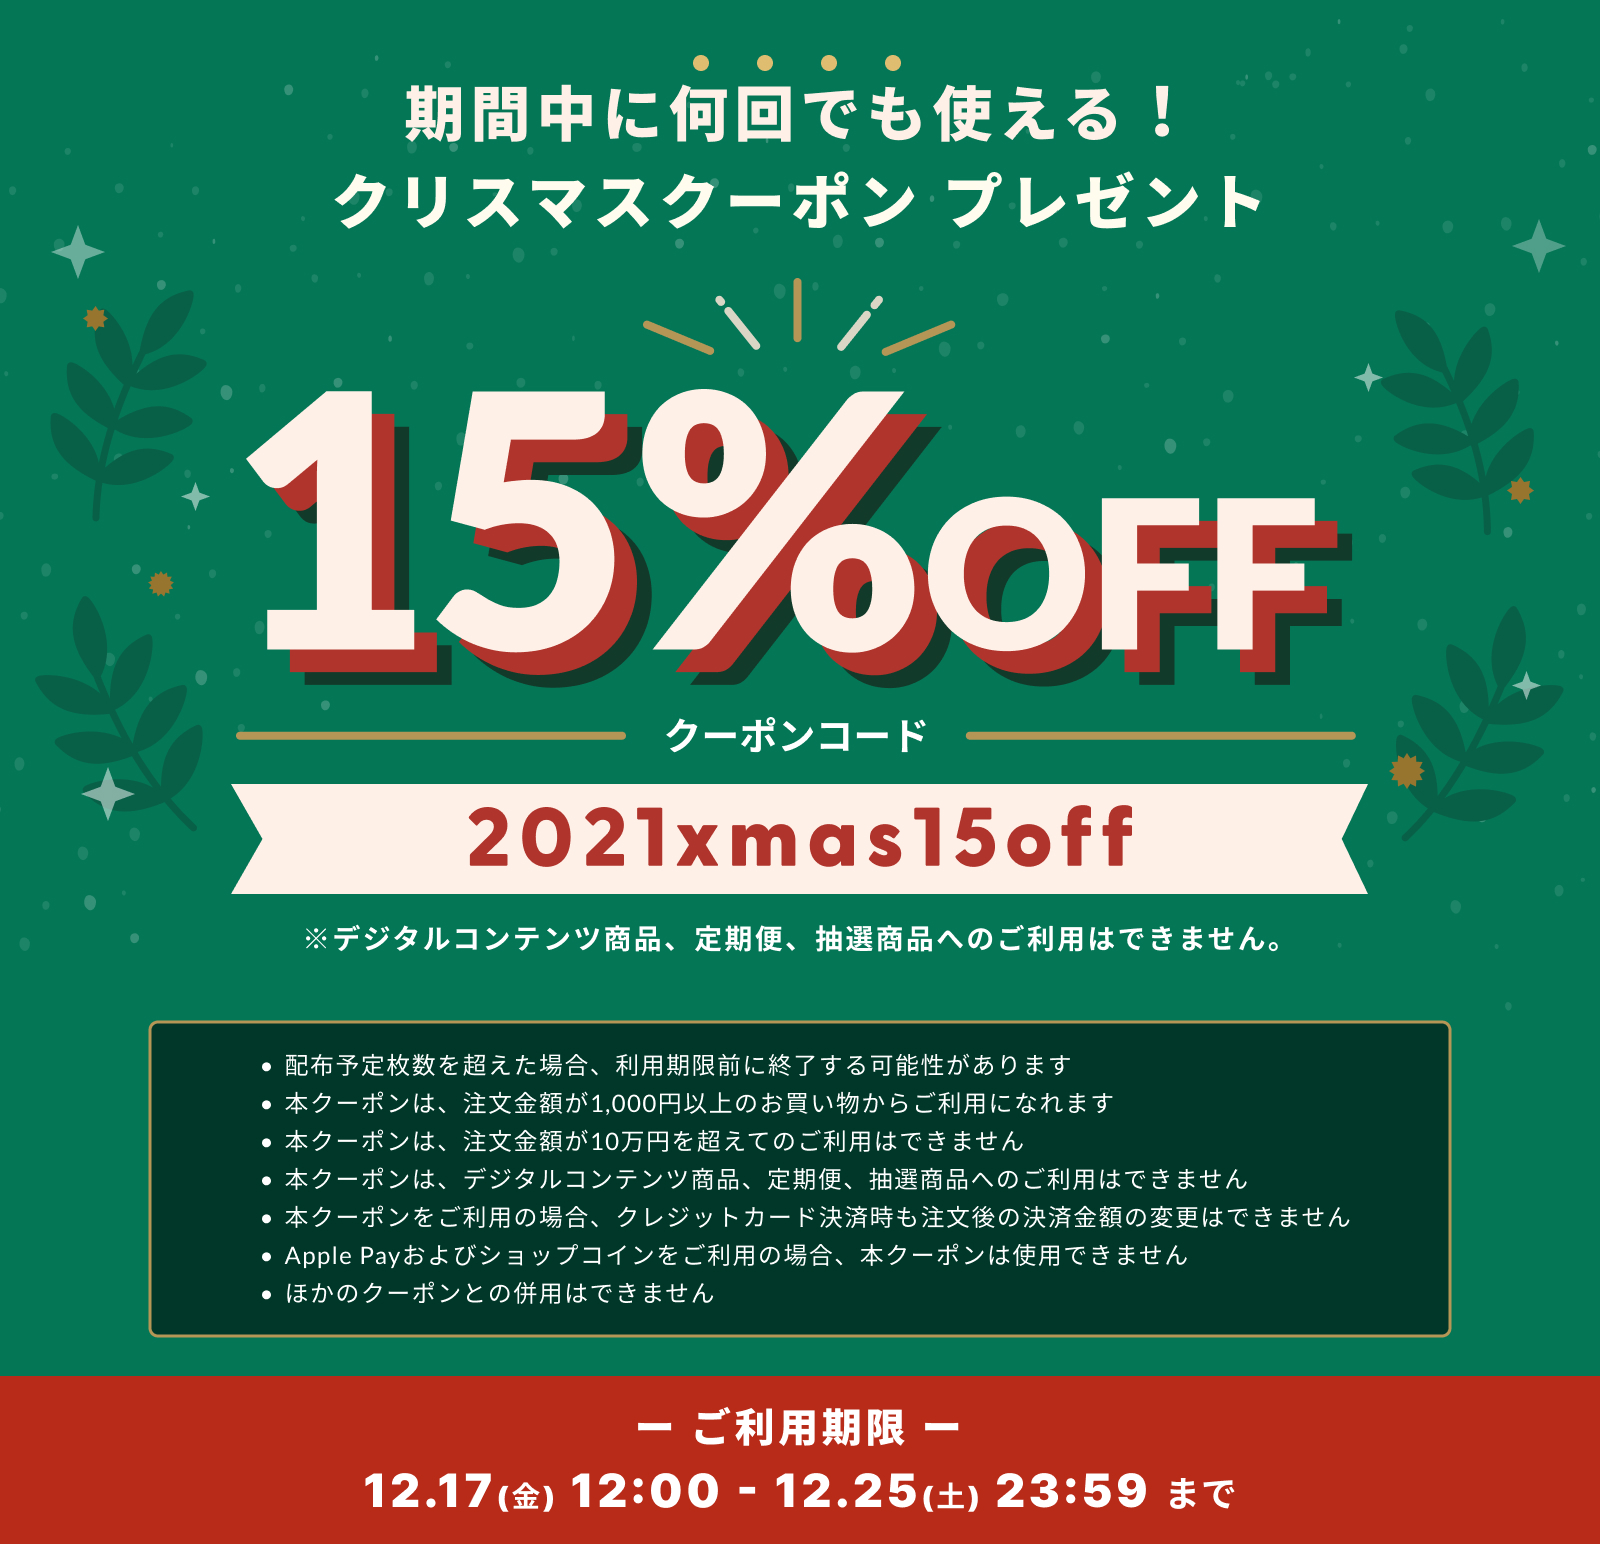 【12/17～12/25 期間限定】 お得な15%OFFクリスマスクーポンキャンペーン